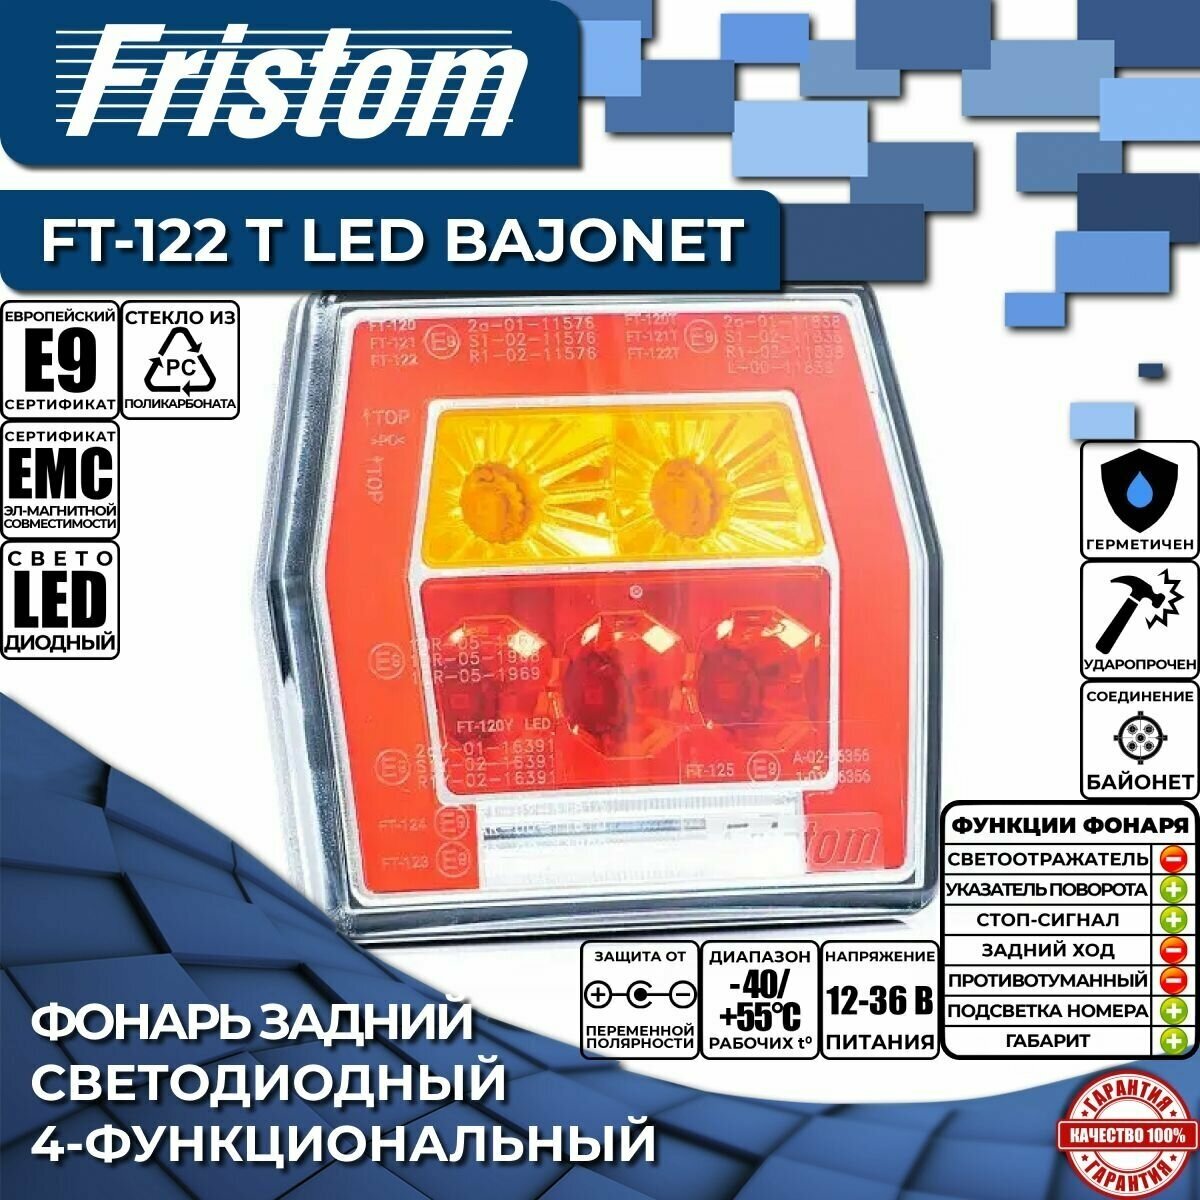 Фонарь задний светодиодный Fristom FT-122 T LED 4-функциональный с проводом 1 м (1 шт.)